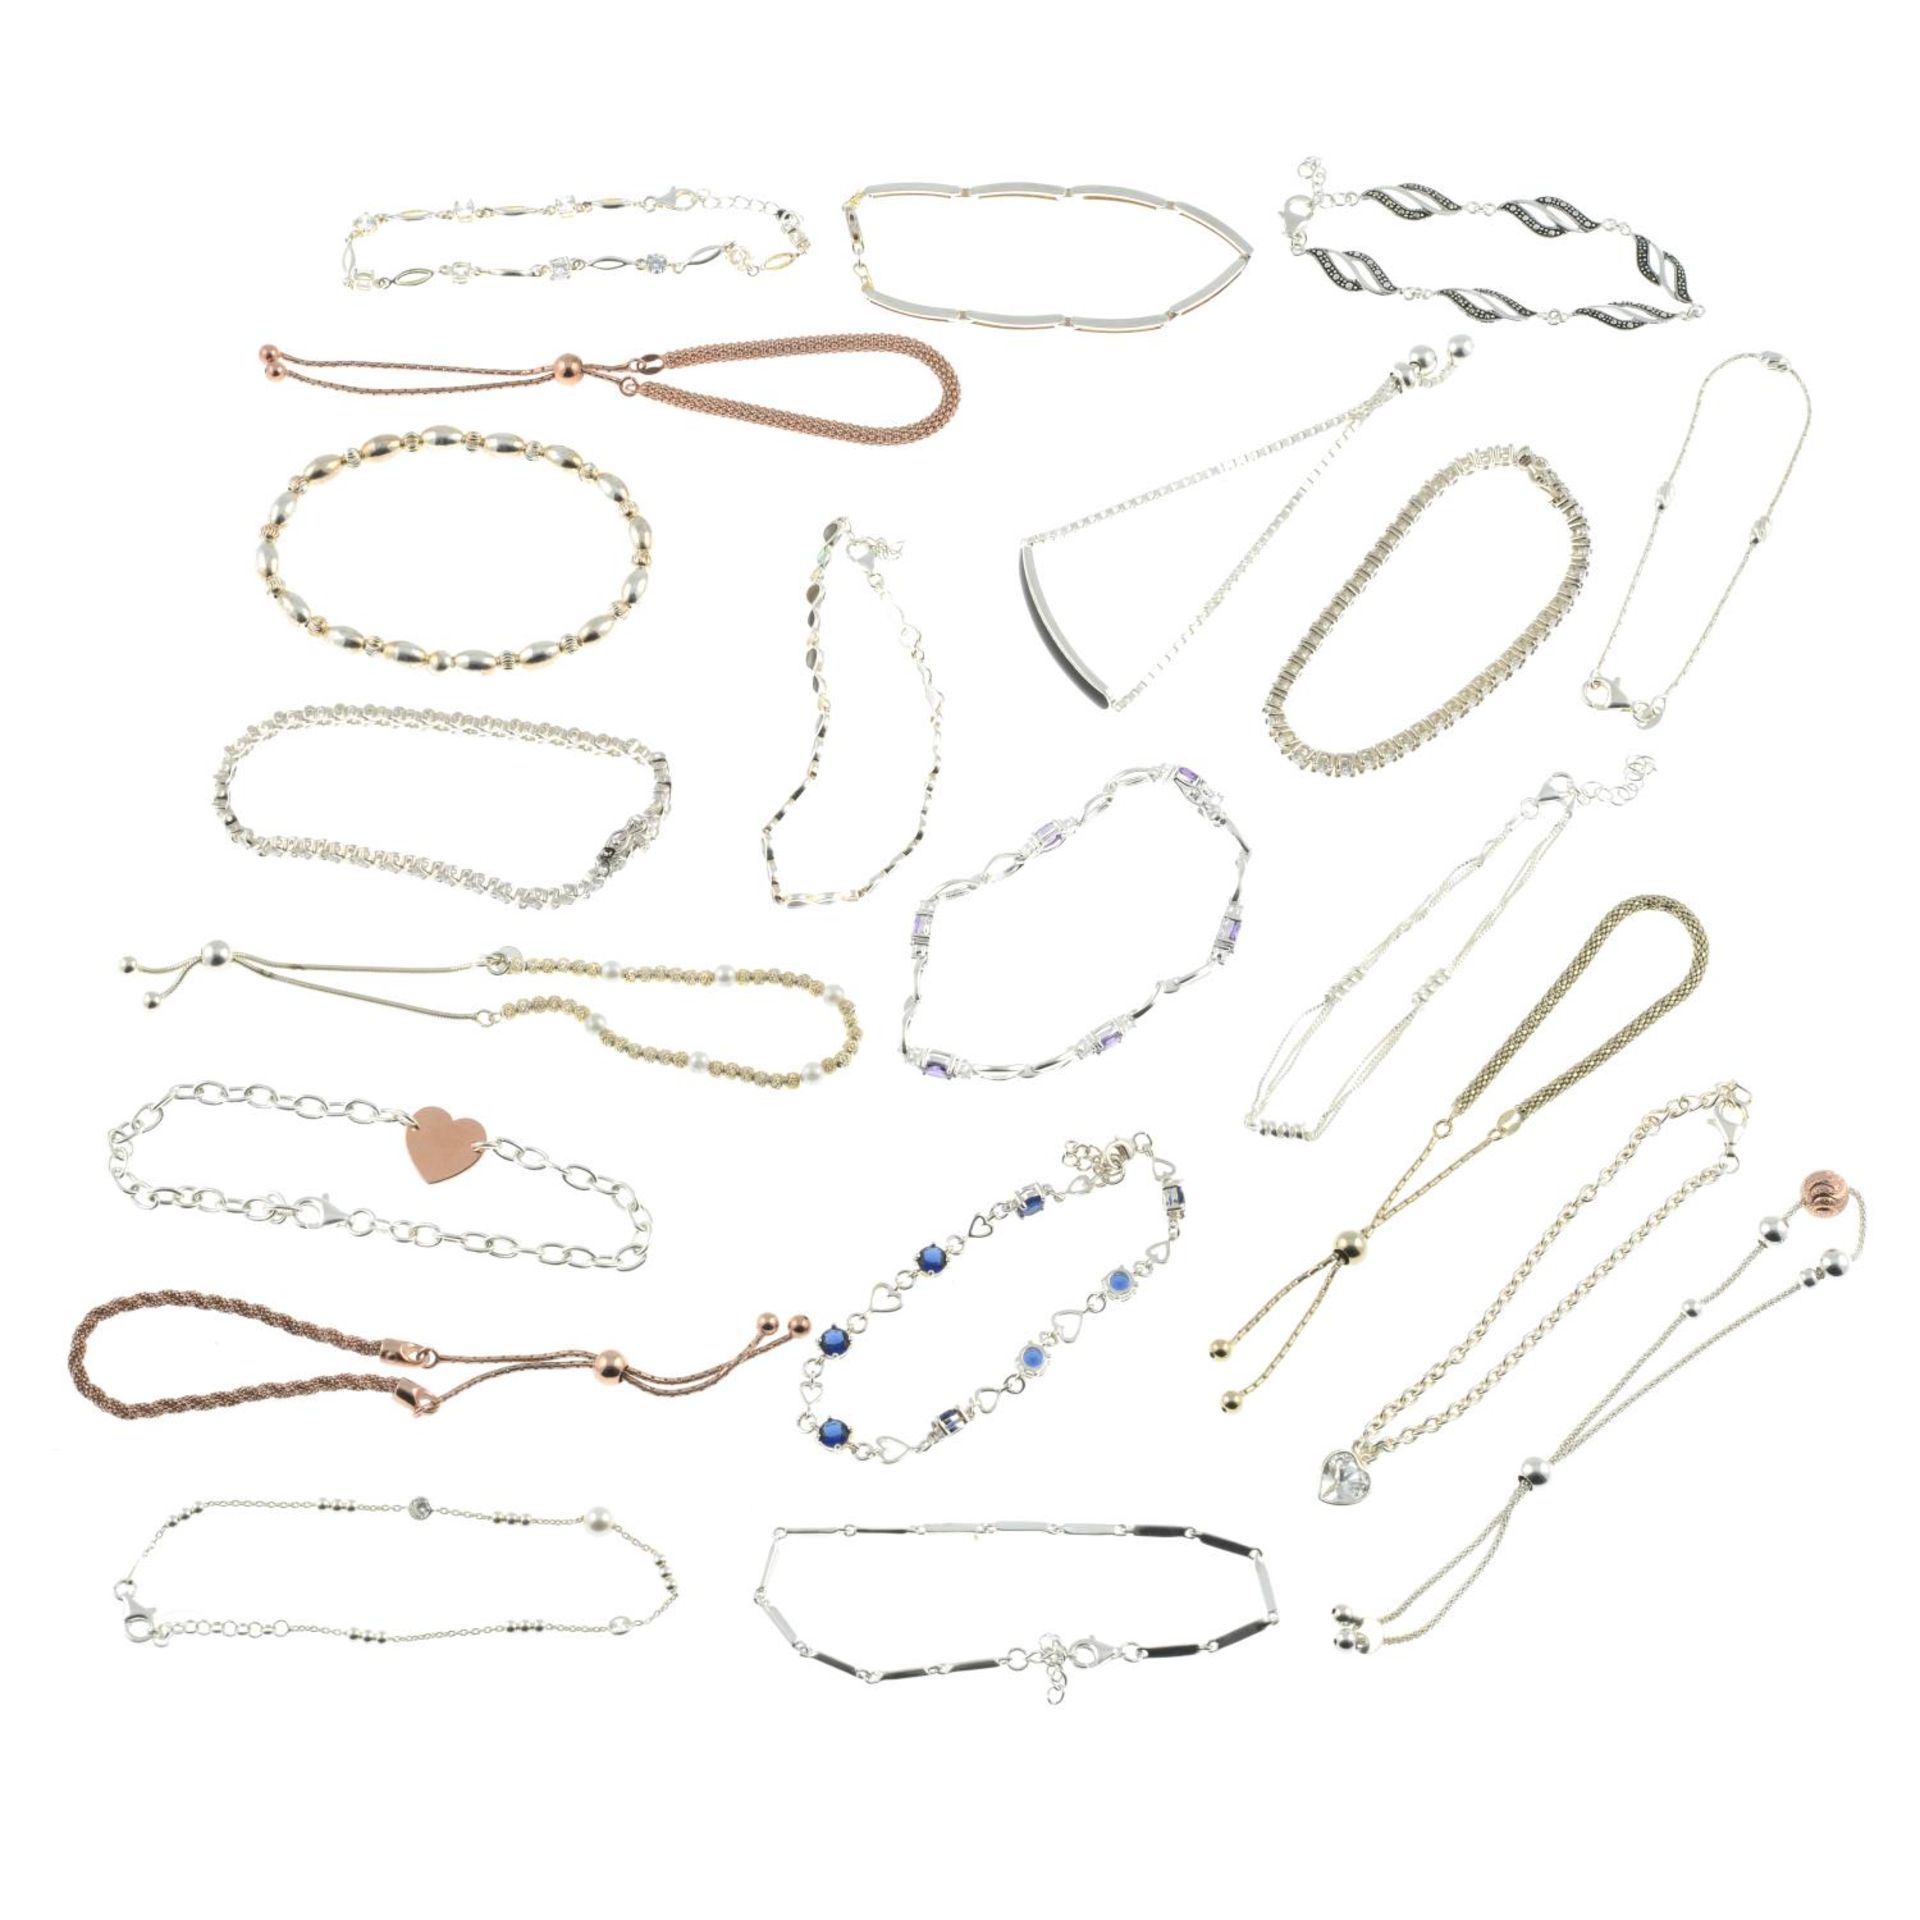 A selection of bracelets, - Image 2 of 2